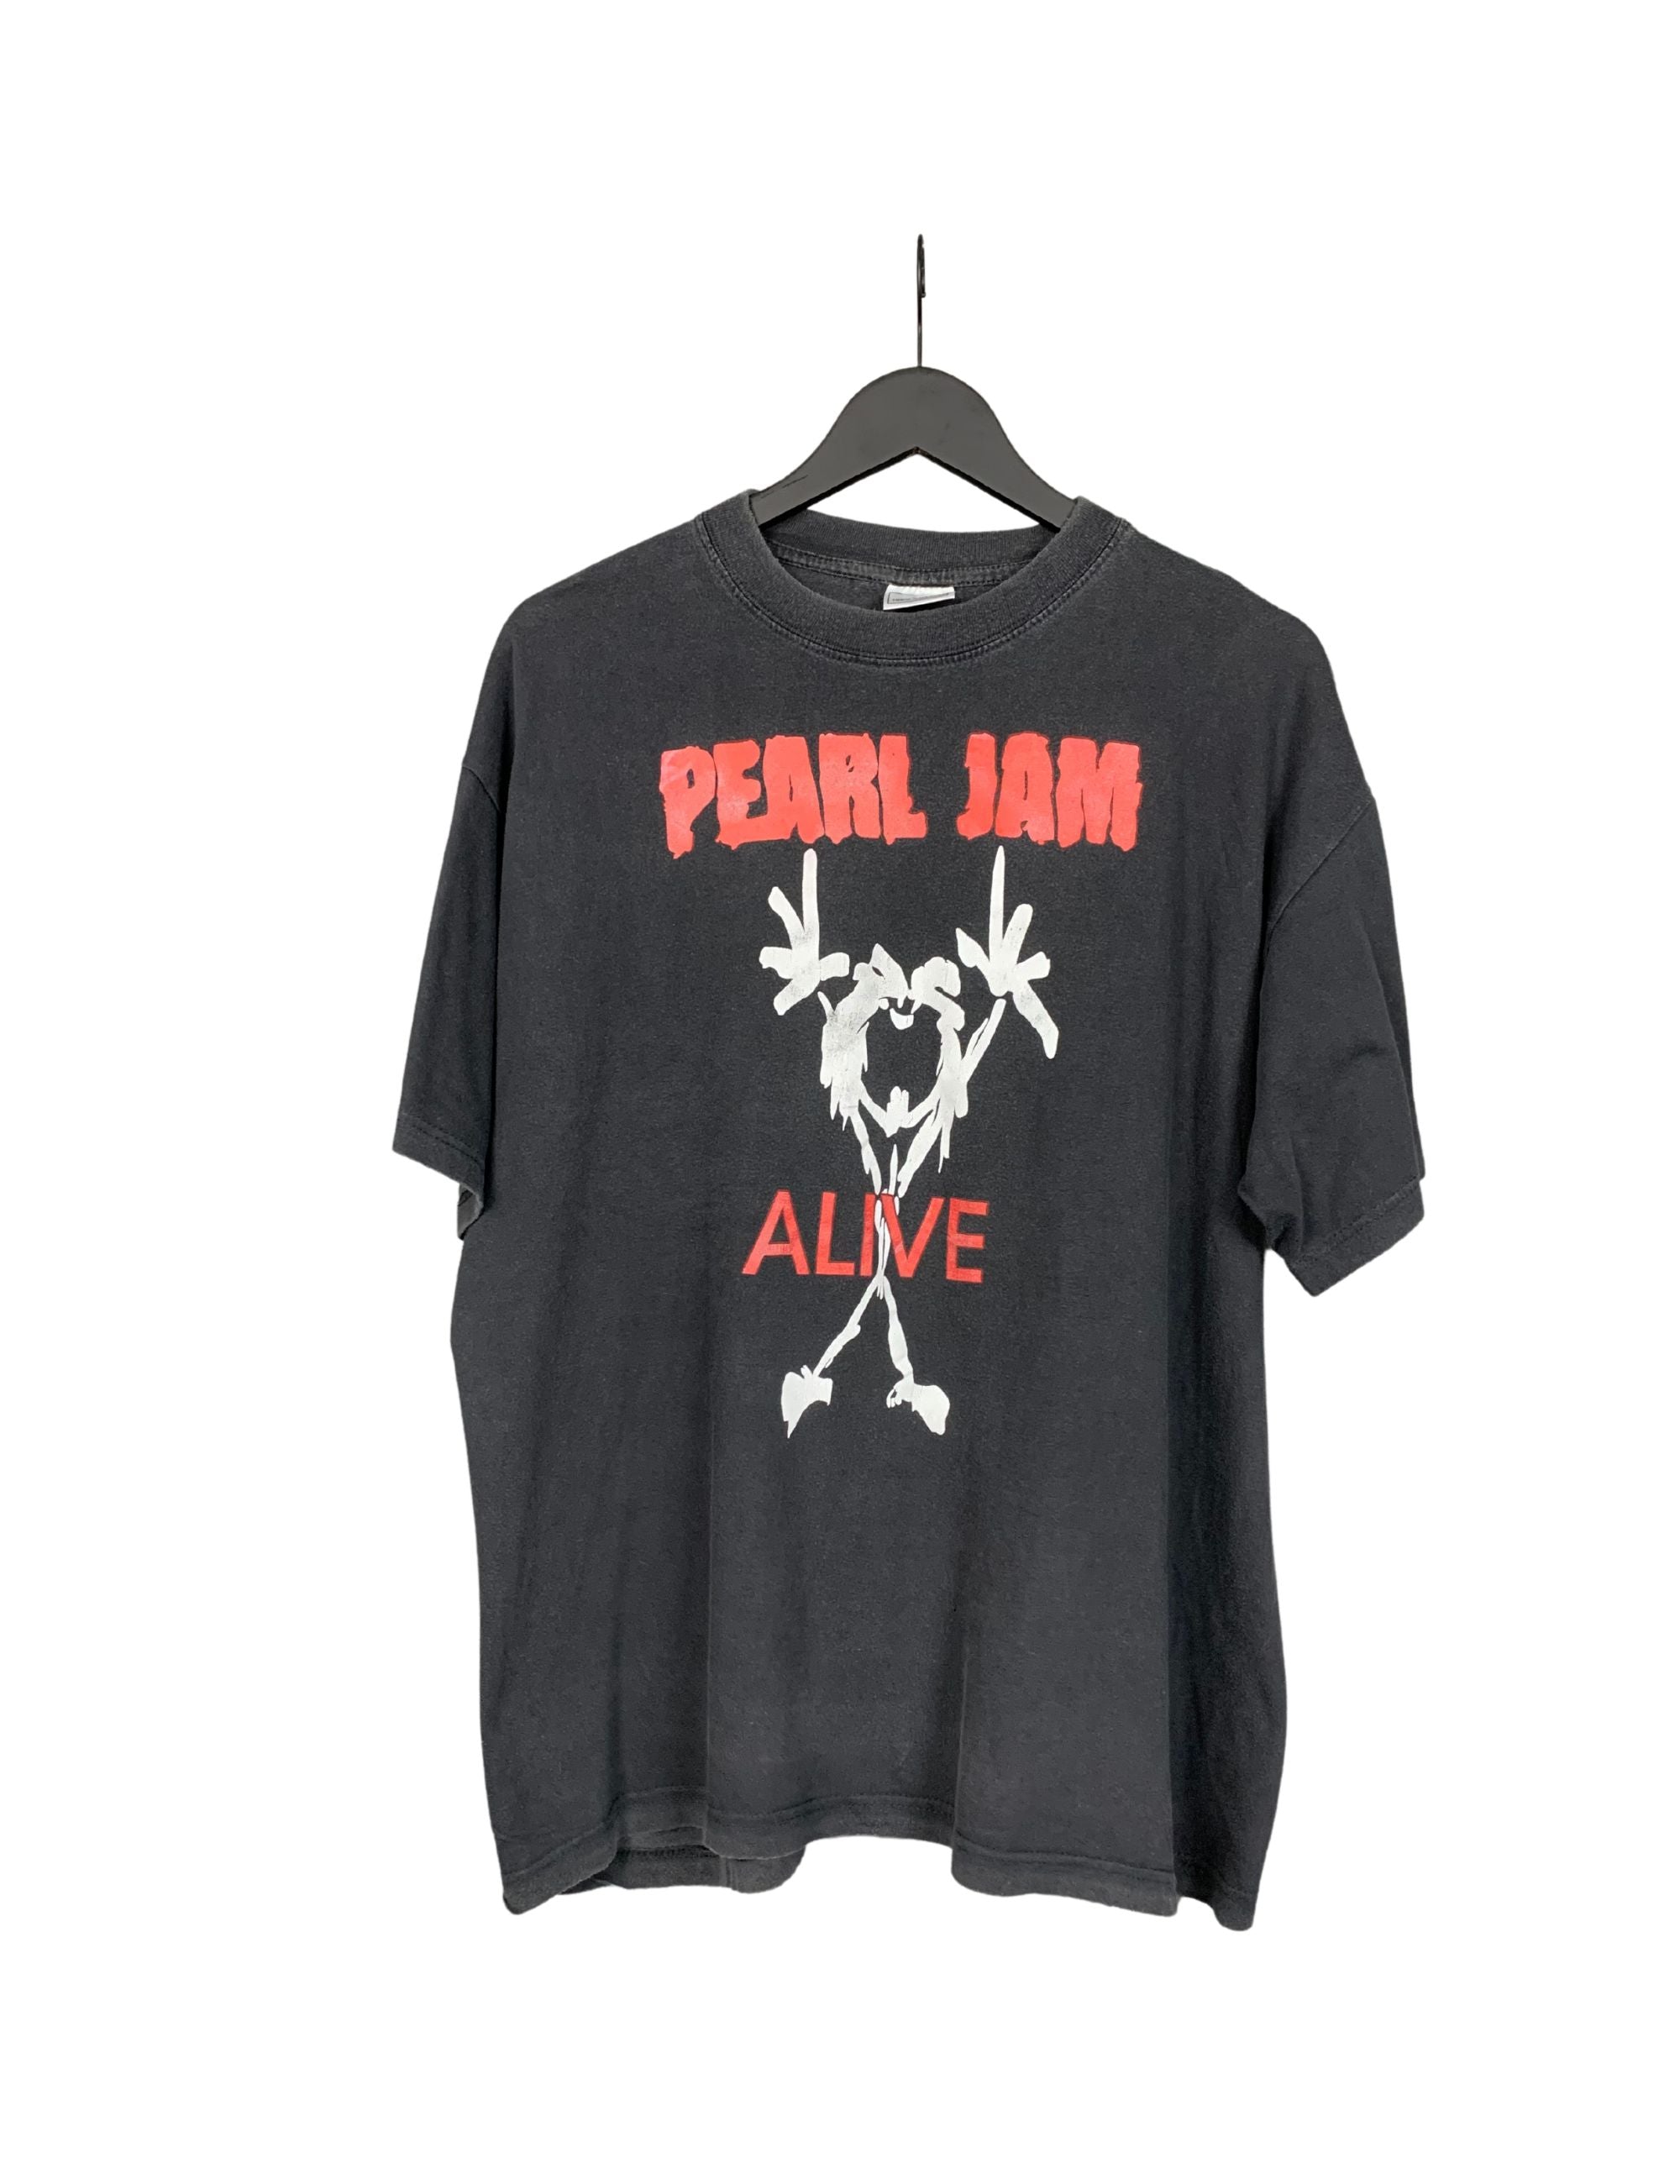 Vintage 90’s Pearl Jam Vs “Pig” Tee Original Owner Rare by Nice Man Tees